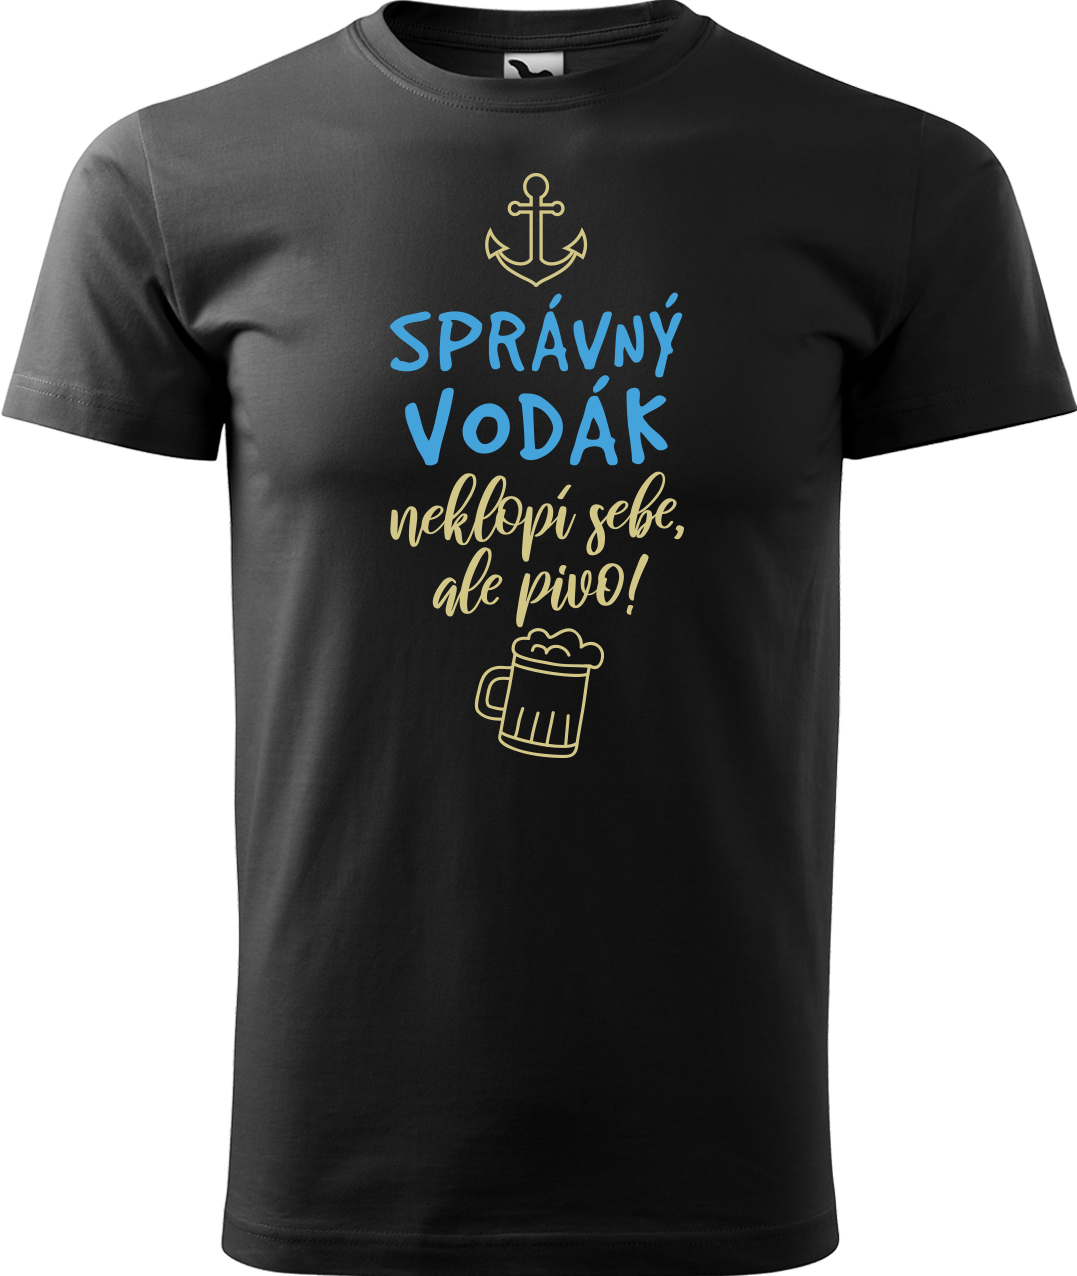 Pánské vodácké tričko - Správný vodák Velikost: 3XL, Barva: Černá (01)